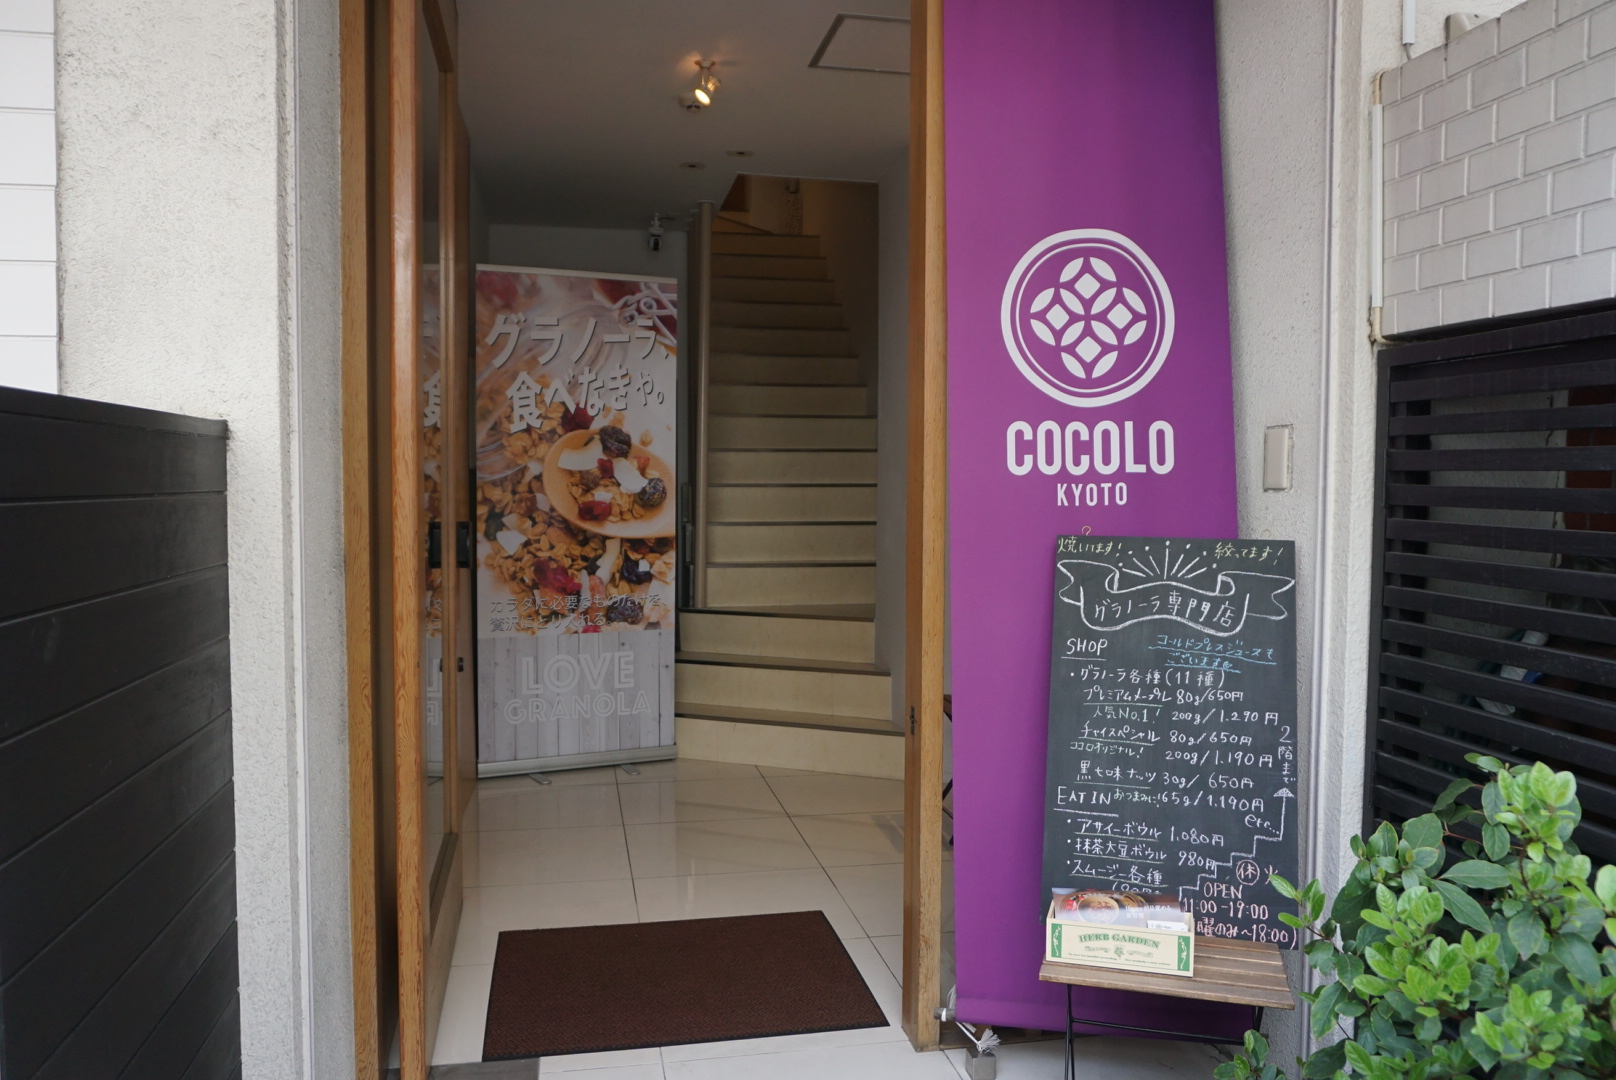 COCOLO KYOTO -Japanese style granola shop & cafe- image04